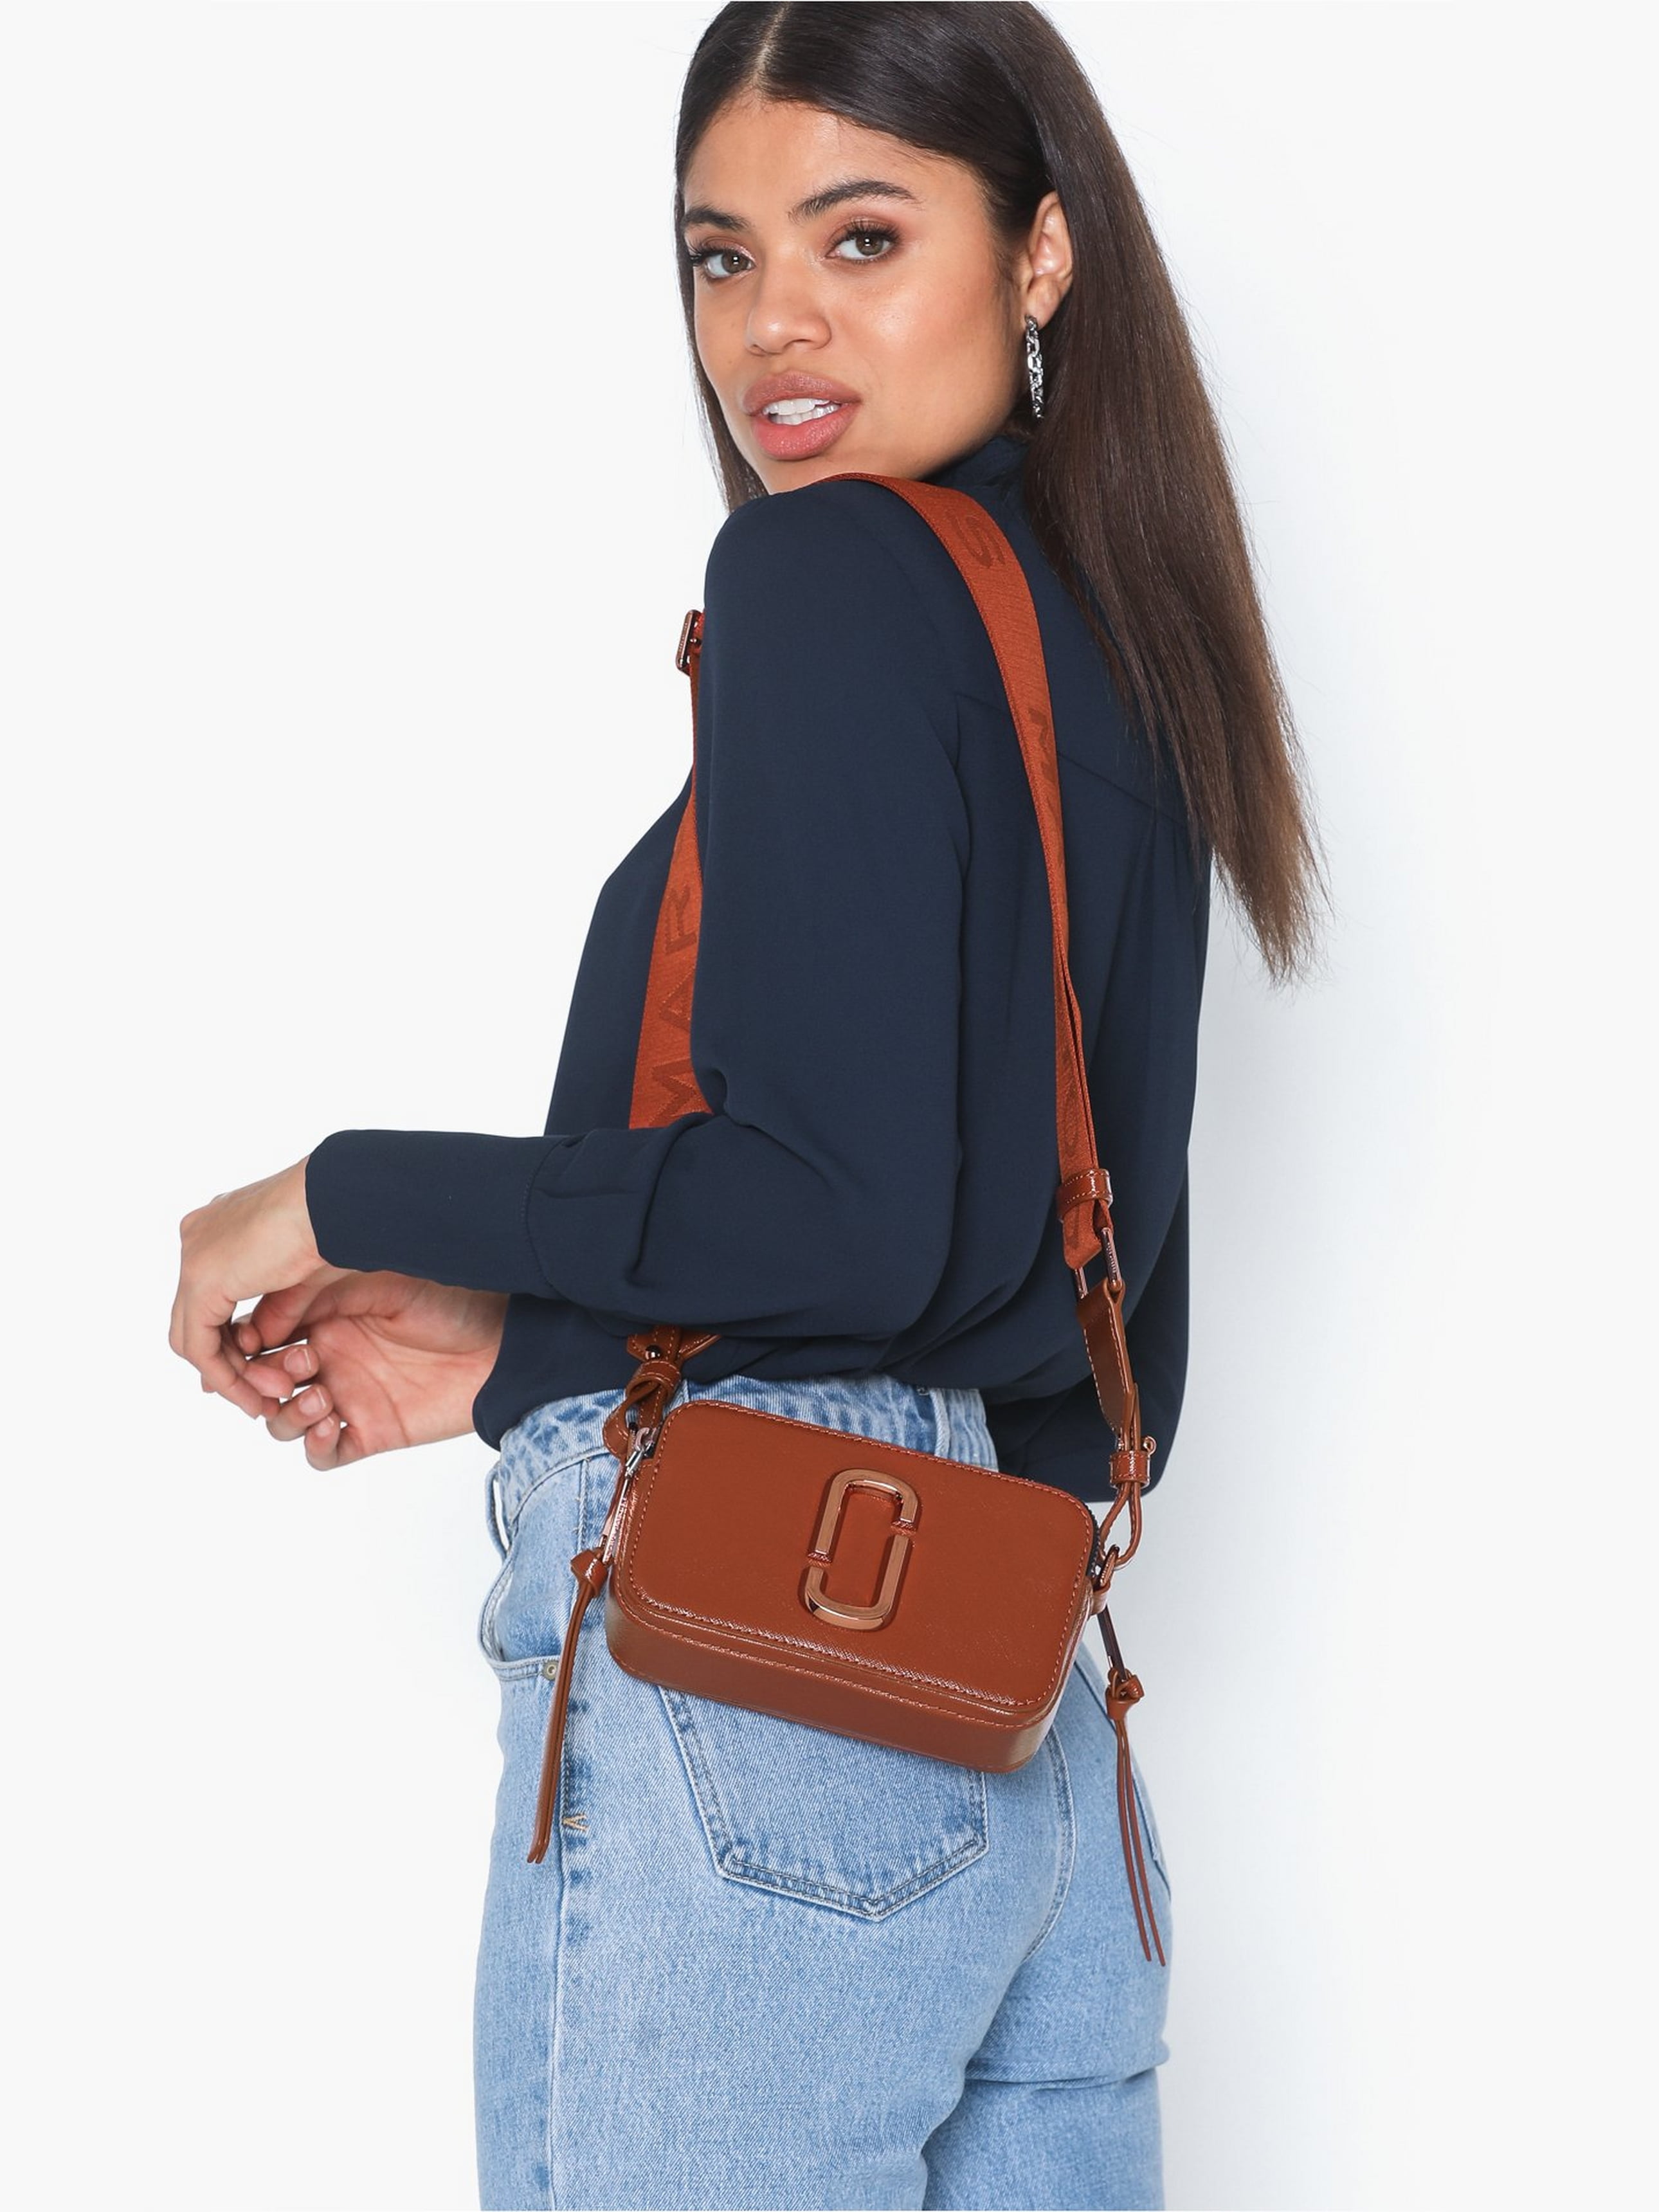 Túi đeo chéo nữ Marc Jacobs màu cam nâu The Snapshot Monochrome Leather Camera Bag 8